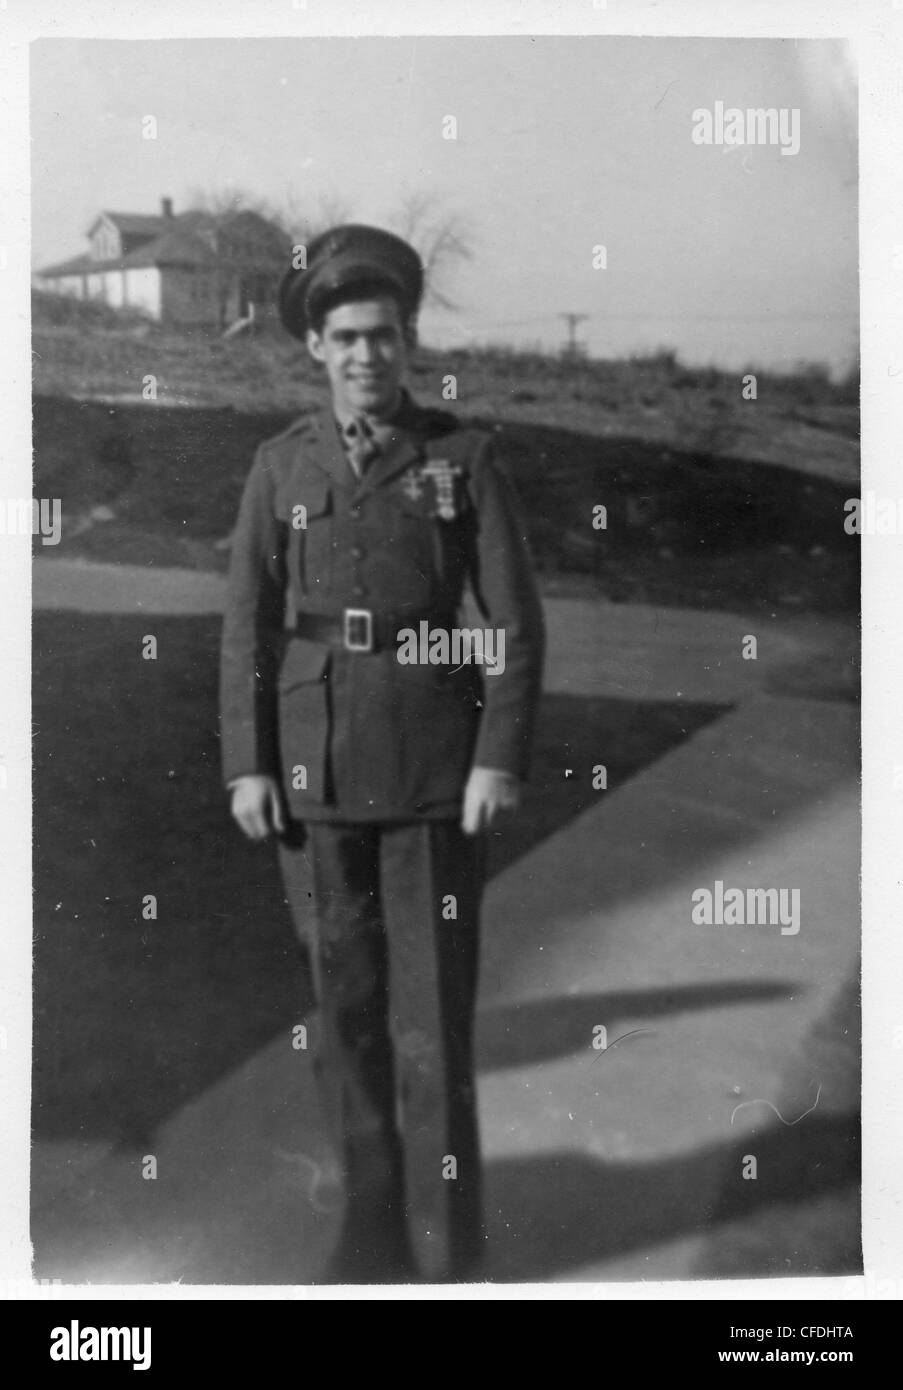 El hombre en el uniforme de vestir 1940 WWII mejor generación marines Foto de stock